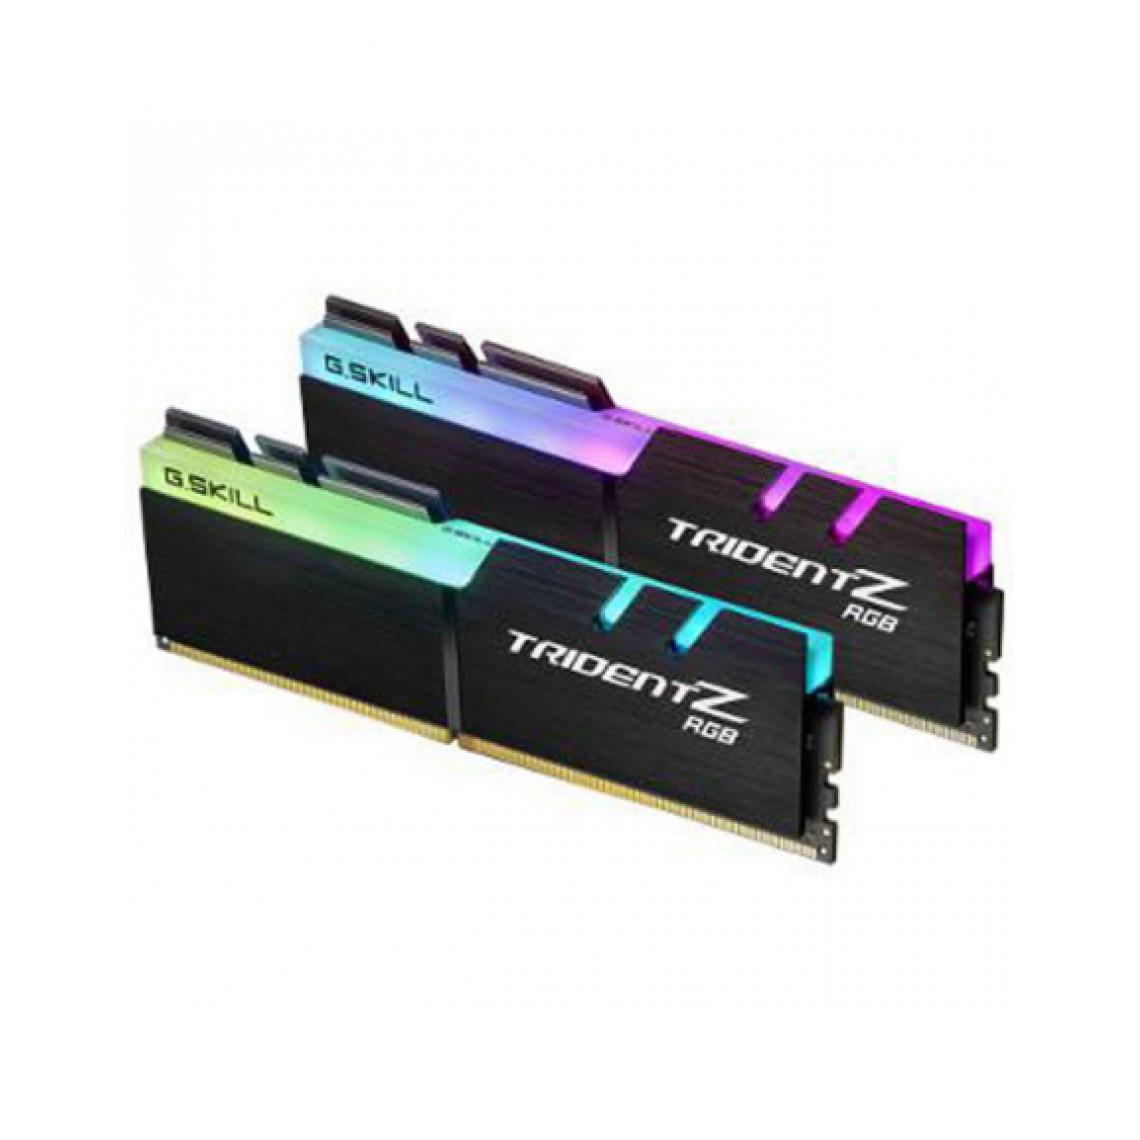 Gskill - Trident Z RGB 16 Go (2x 8 Go) DDR4 2400 MHz CL15 - RAM PC Fixe